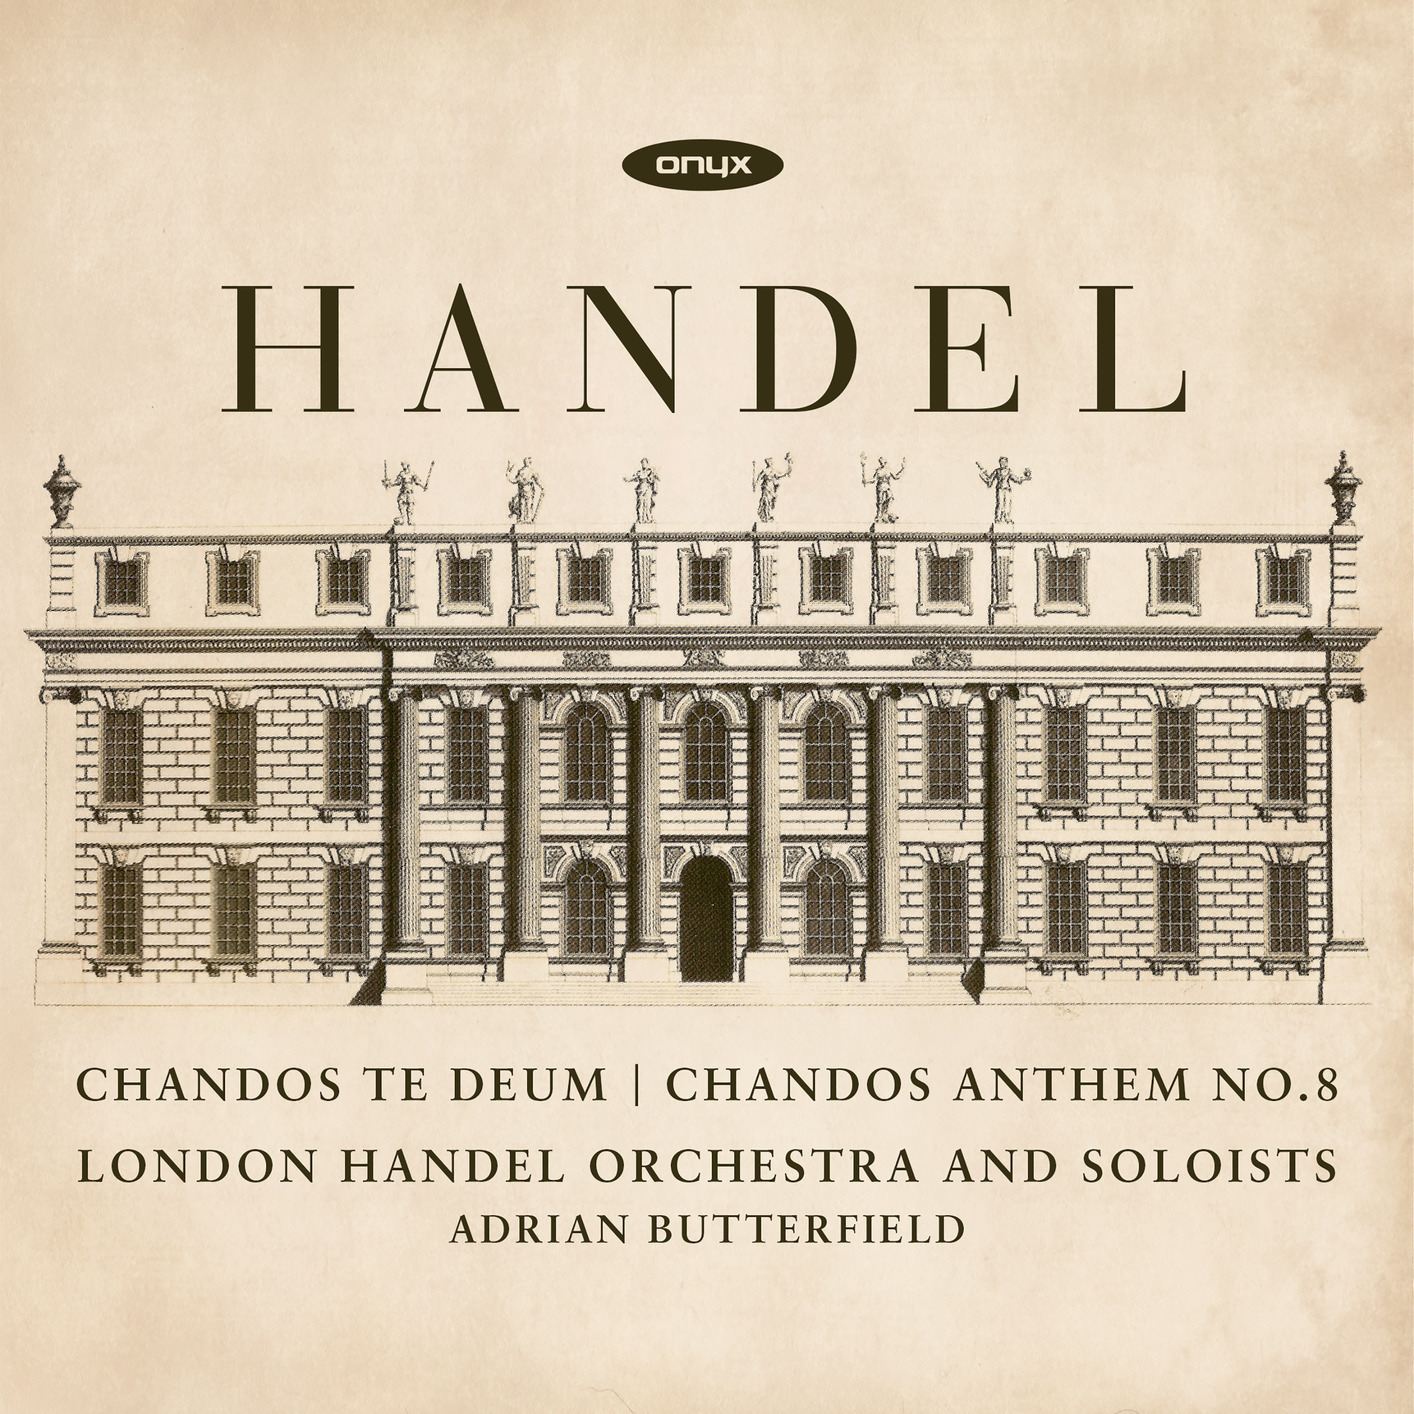 Adrian Butterfield - Handel: Chandos Te Deum - Chandos Anthem No. 8 (2018) [FLAC 24bit/96kHz]